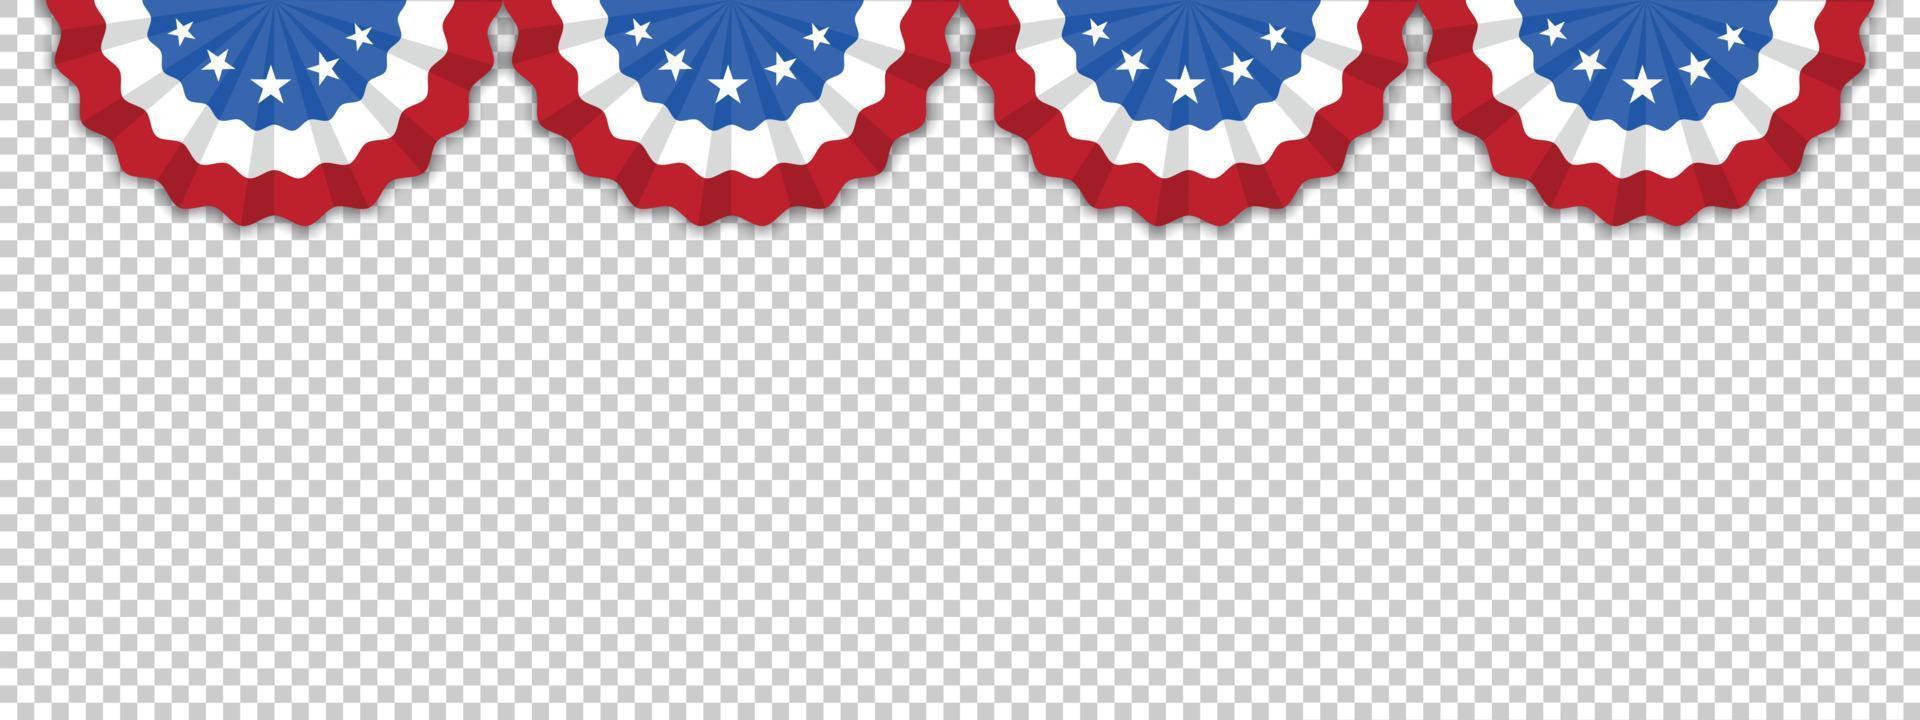 cuatro banderas estadounidenses aisladas en un fondo transparente con espacio para su texto. ilustrador vectorial eps 10. vector